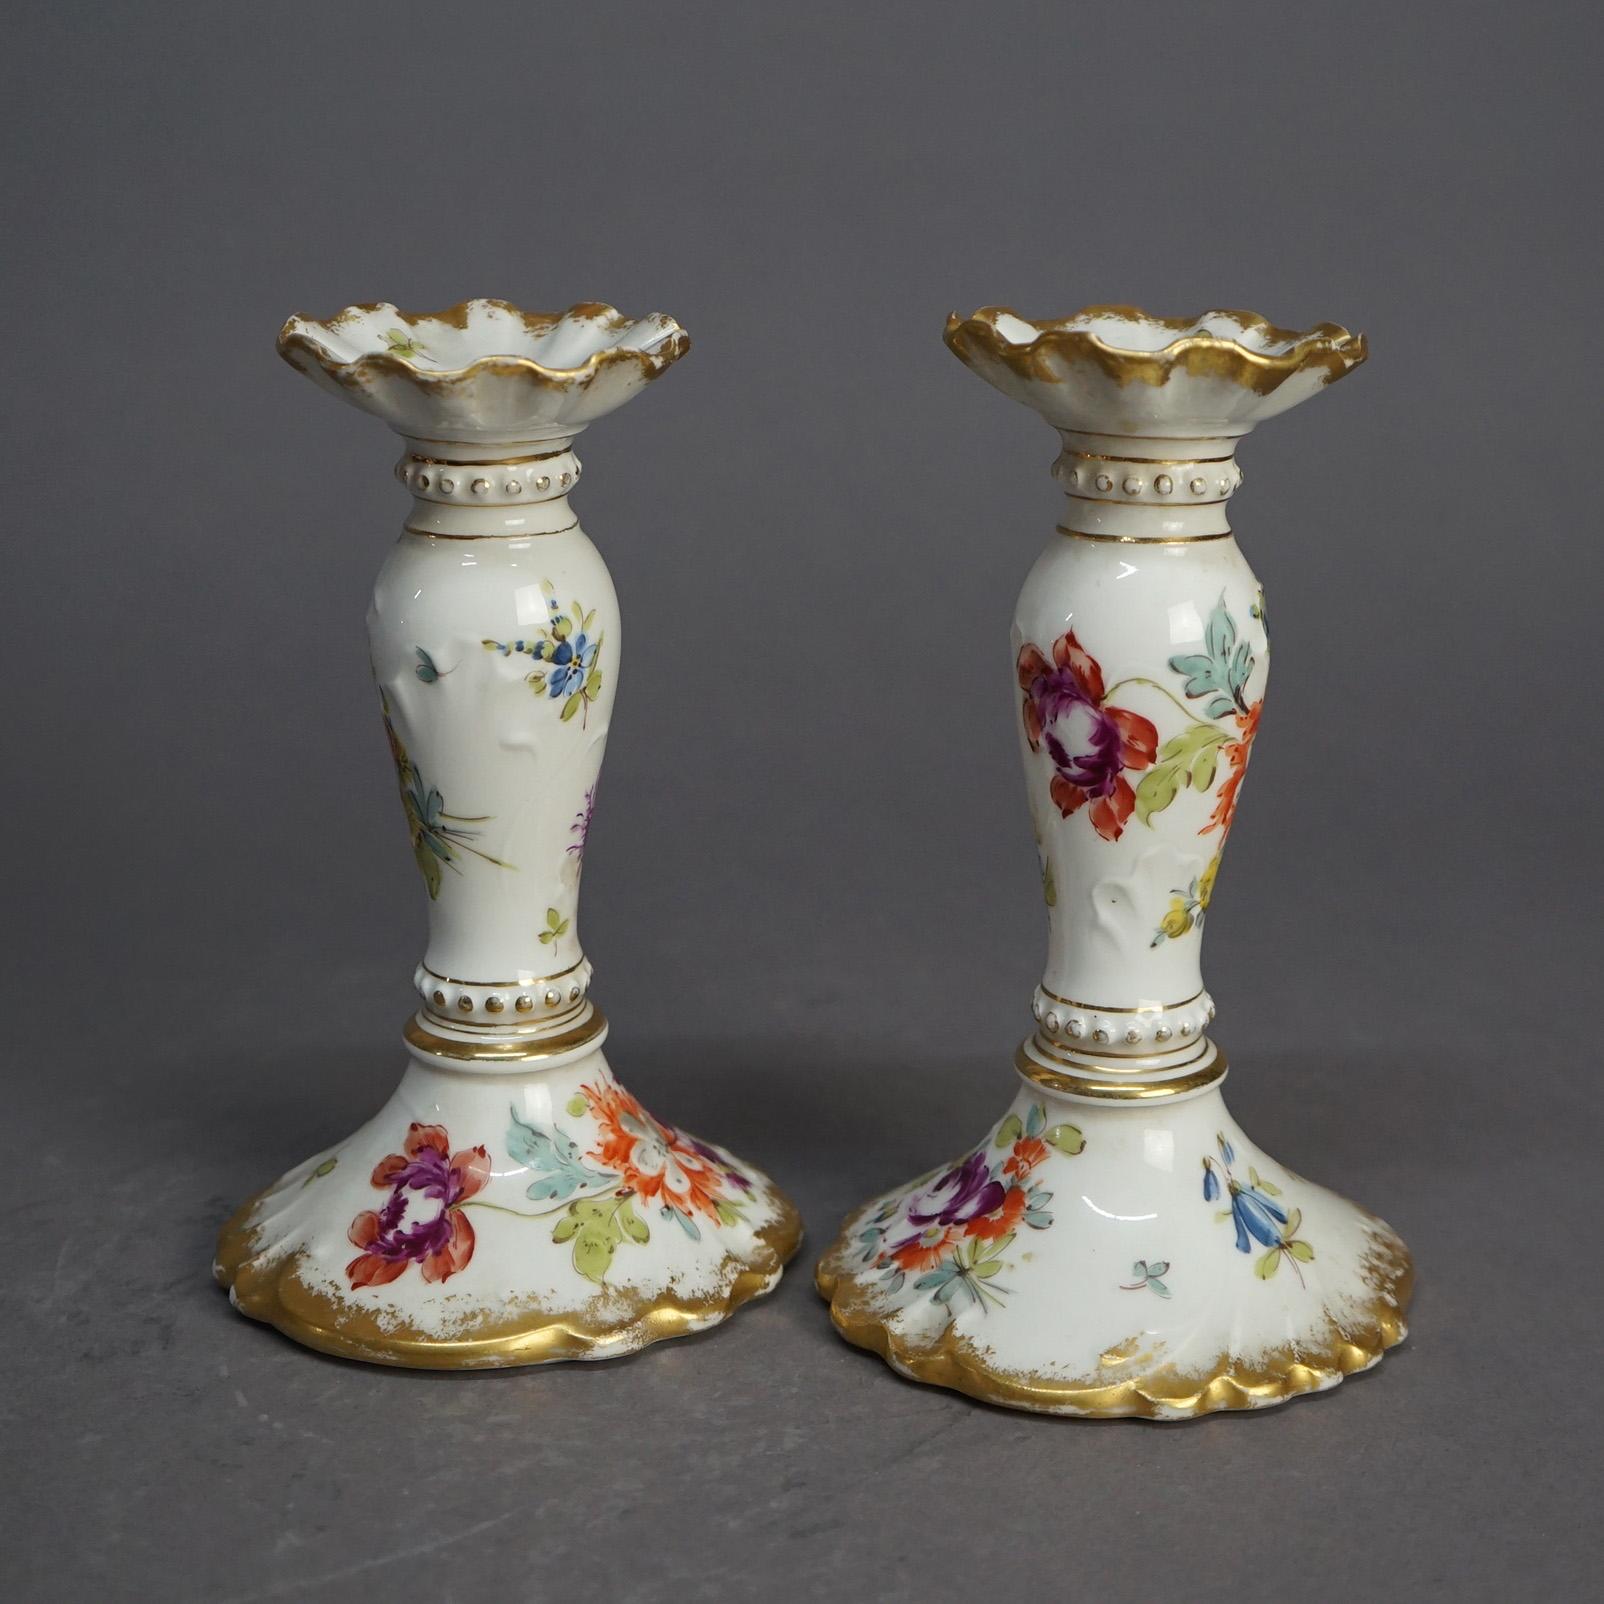 Paire de chandeliers allemands anciens en porcelaine avec décor floral peint à la main et rehauts de dorure sur l'ensemble, estampillés Berlin sur les bases comme photographié, vers 1900

Dimensions : 7,25''H x 4,25''W x 4,5''D.